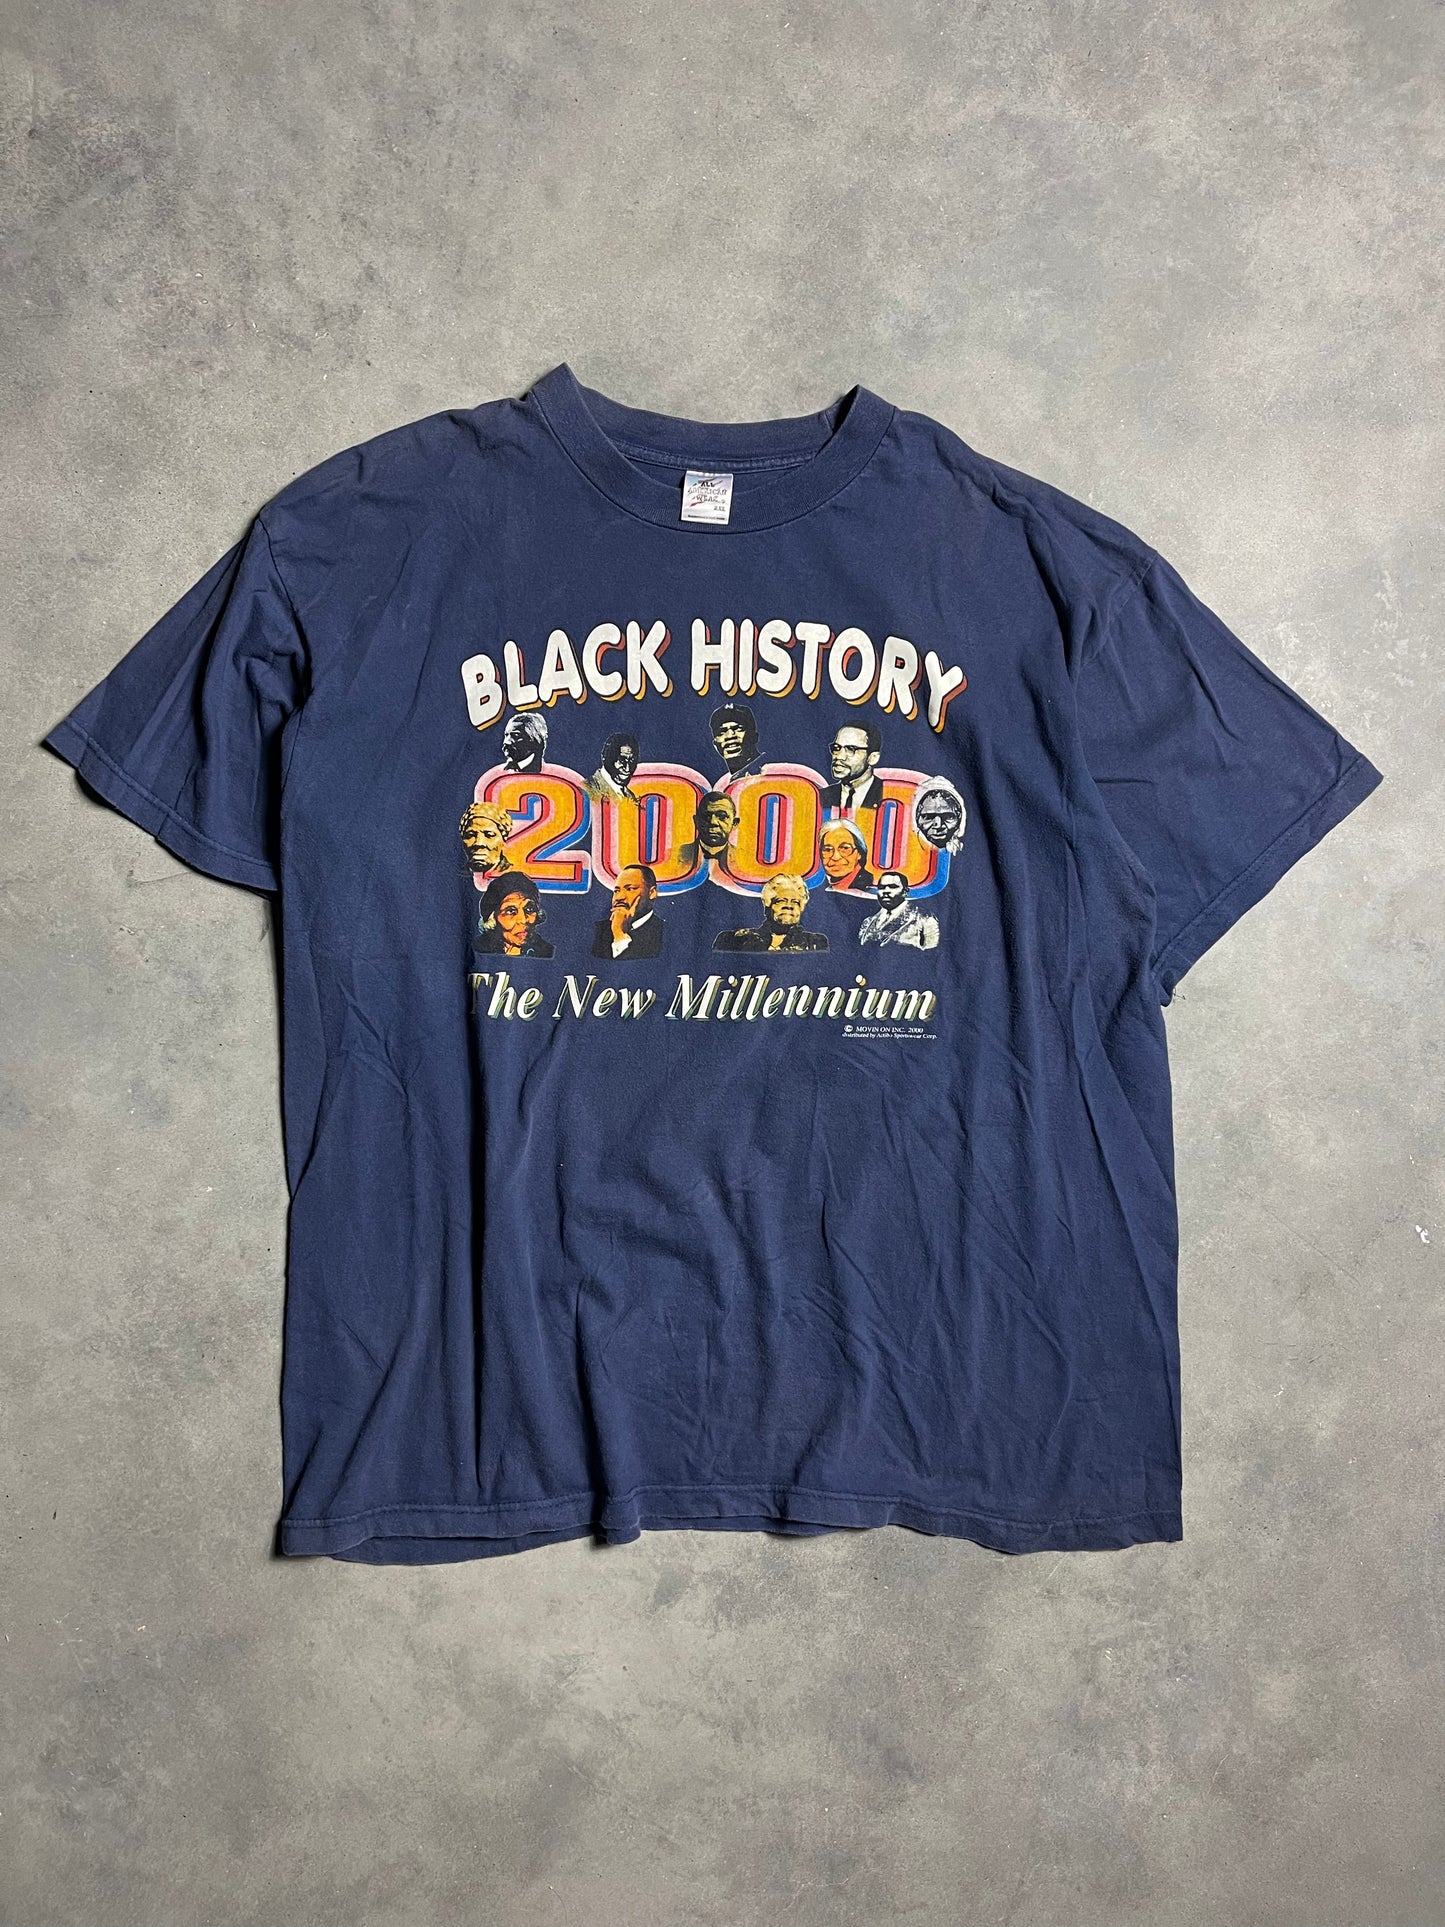 2000 Black History The New Millennium Navy Vintage Tee (XL)